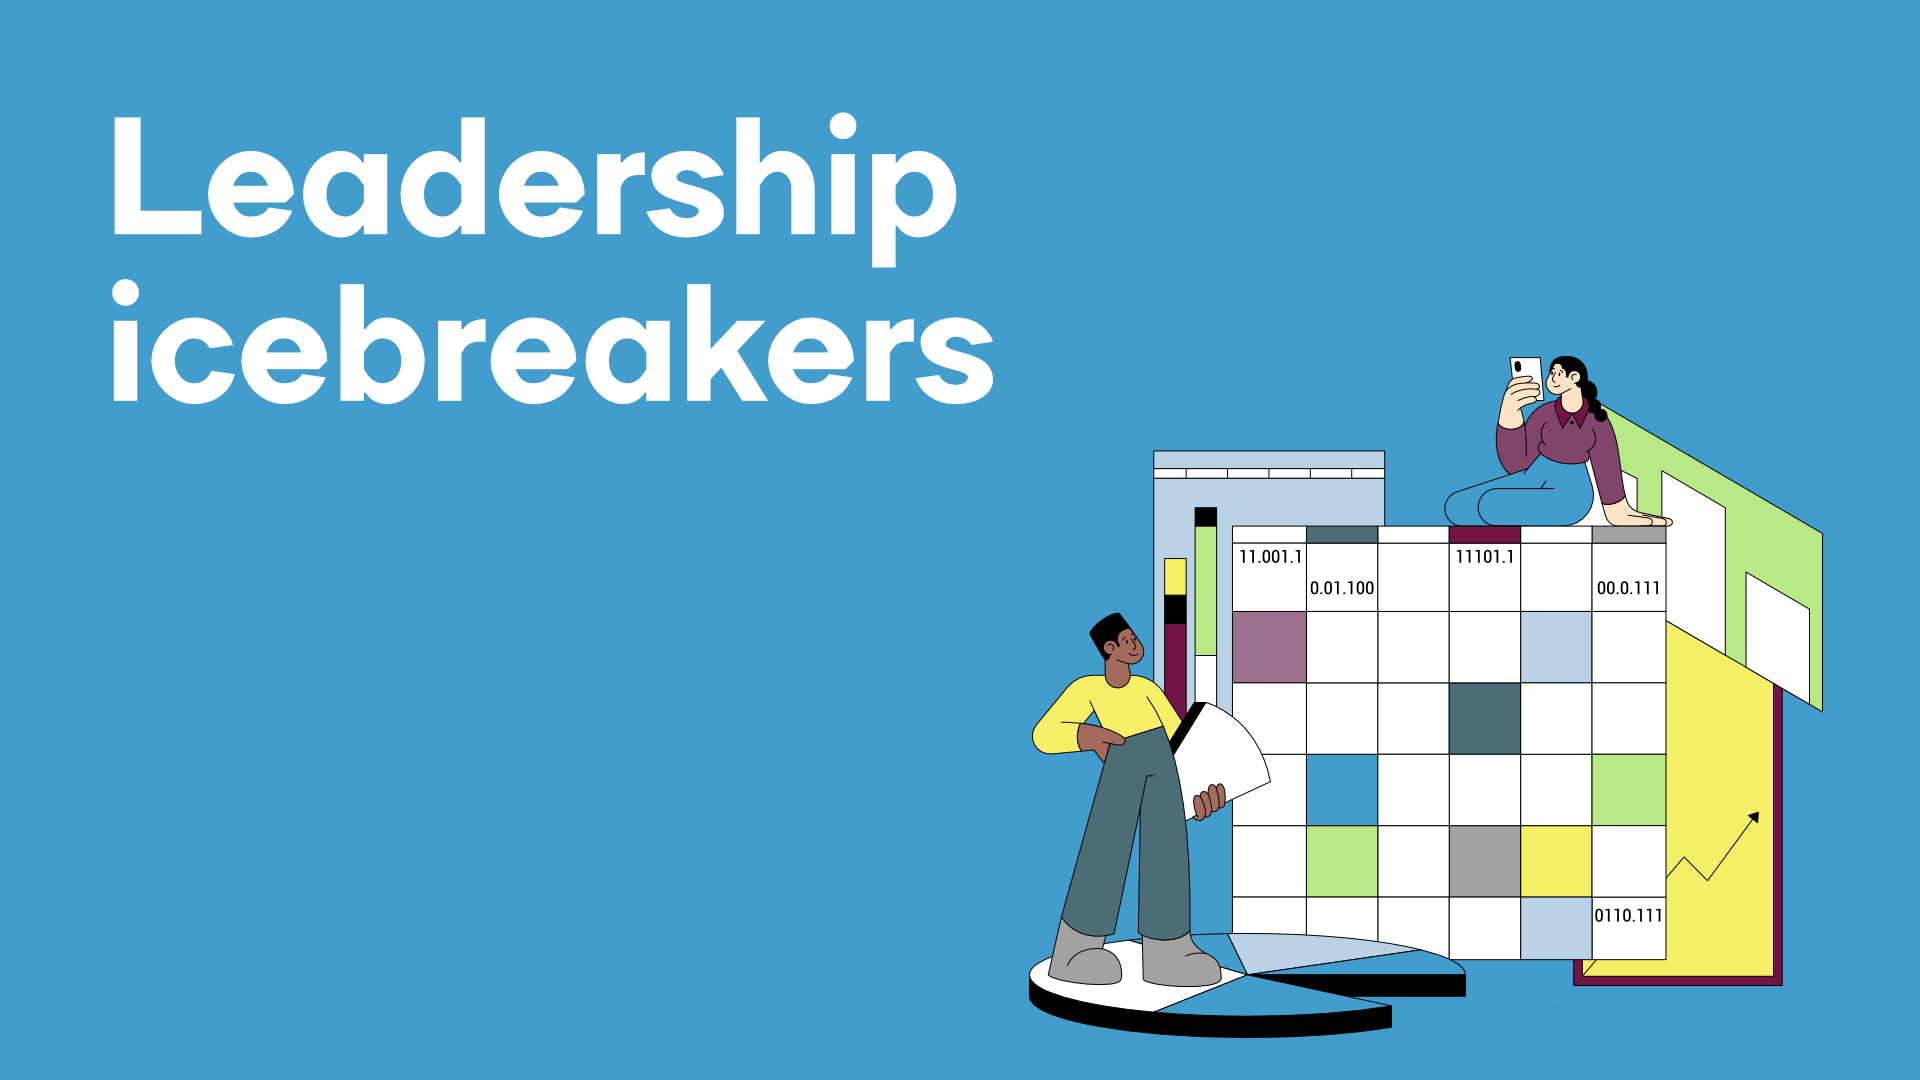 Leadership Icebreakers: 6 Quick Ways to Break the Ice